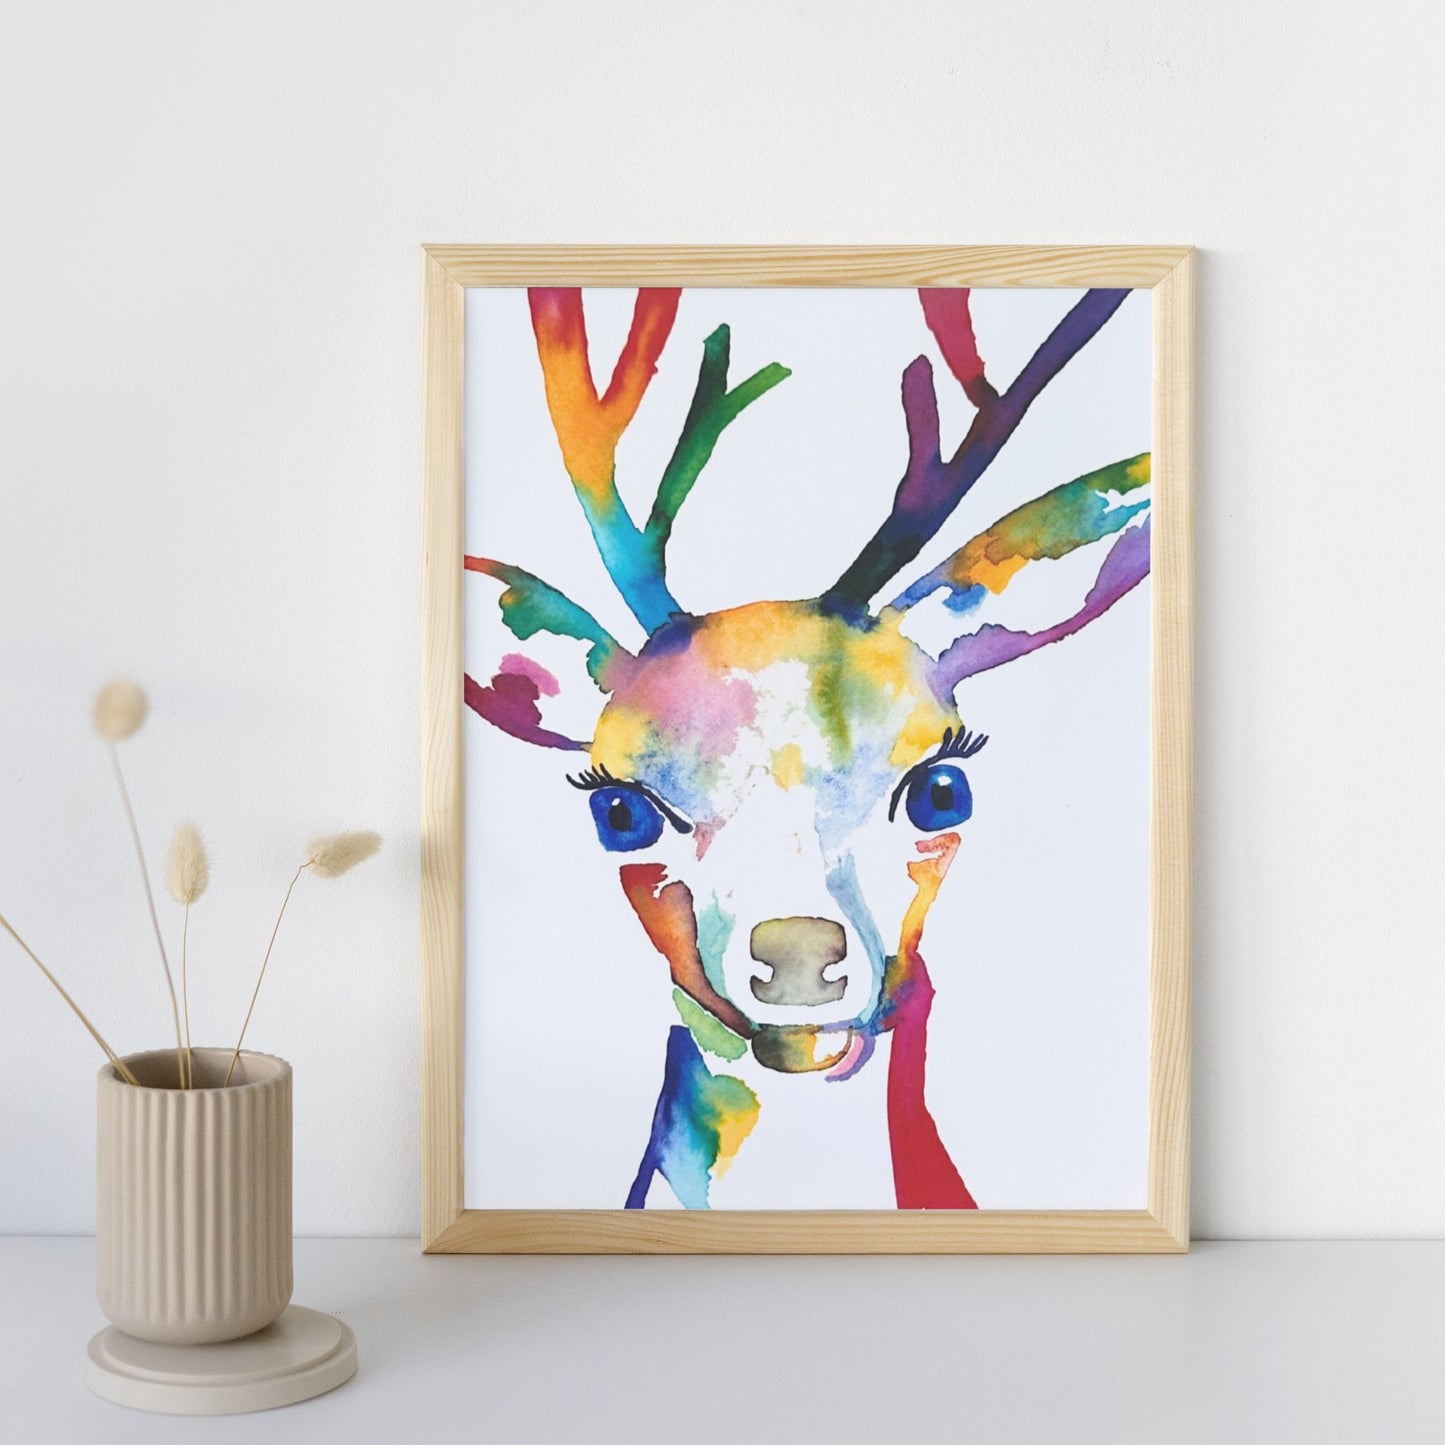 Enchanted Antlers - Rainbow Watercolor Deer